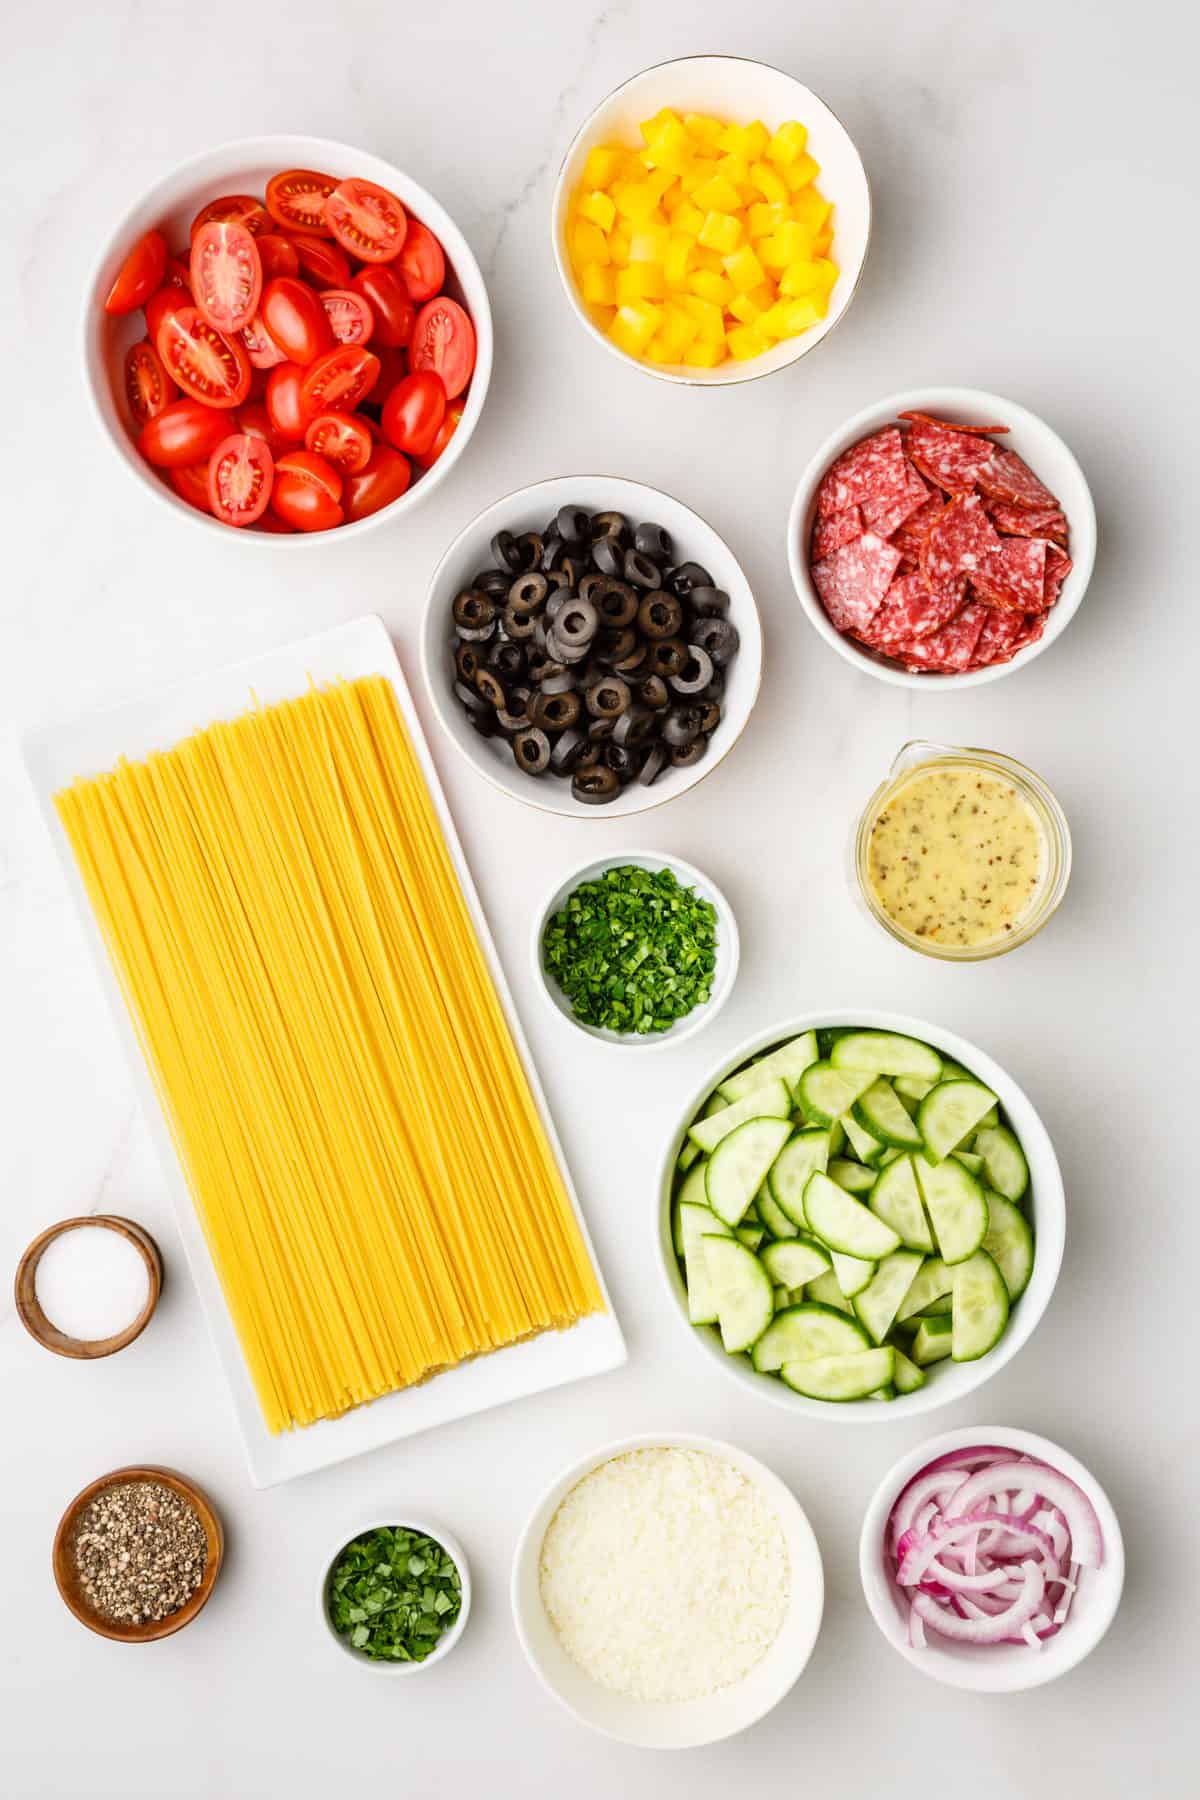 ingredients to make spaghetti salad